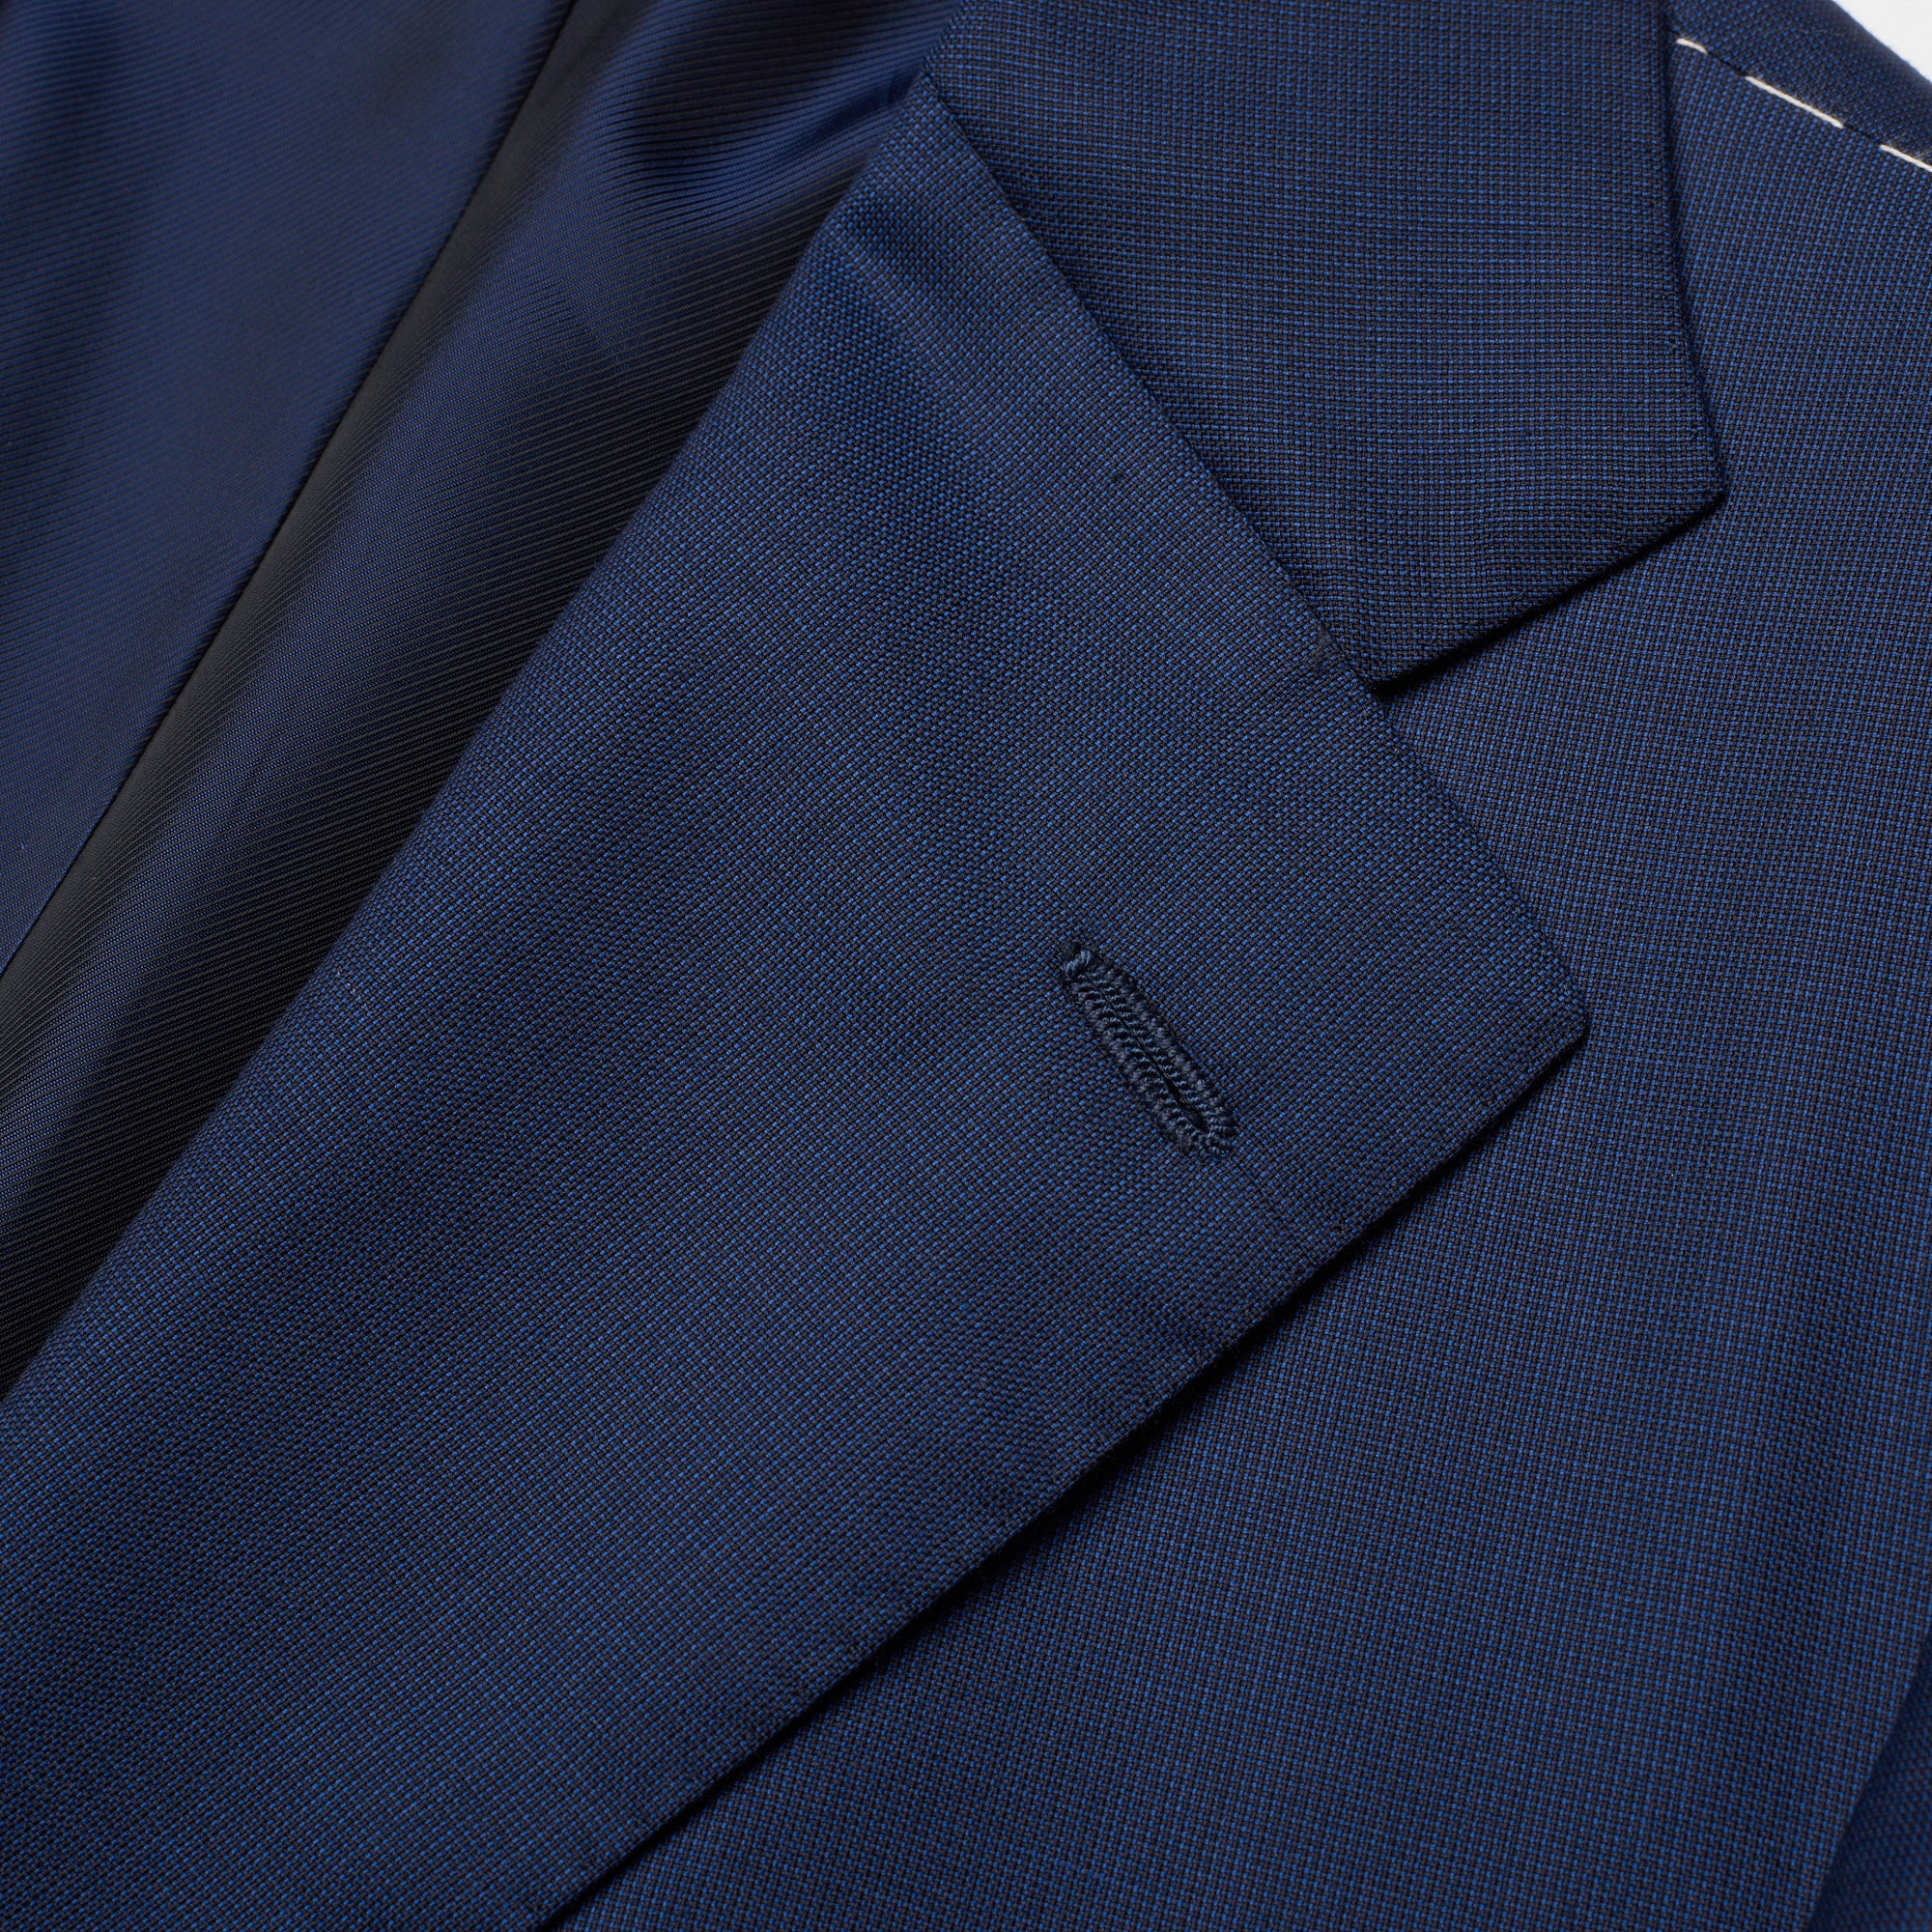 CESARE ATTOLINI Handmade Blue Nailhead Wool-Cashmere Suit 48 NEW US 38 CESARE ATTOLINI